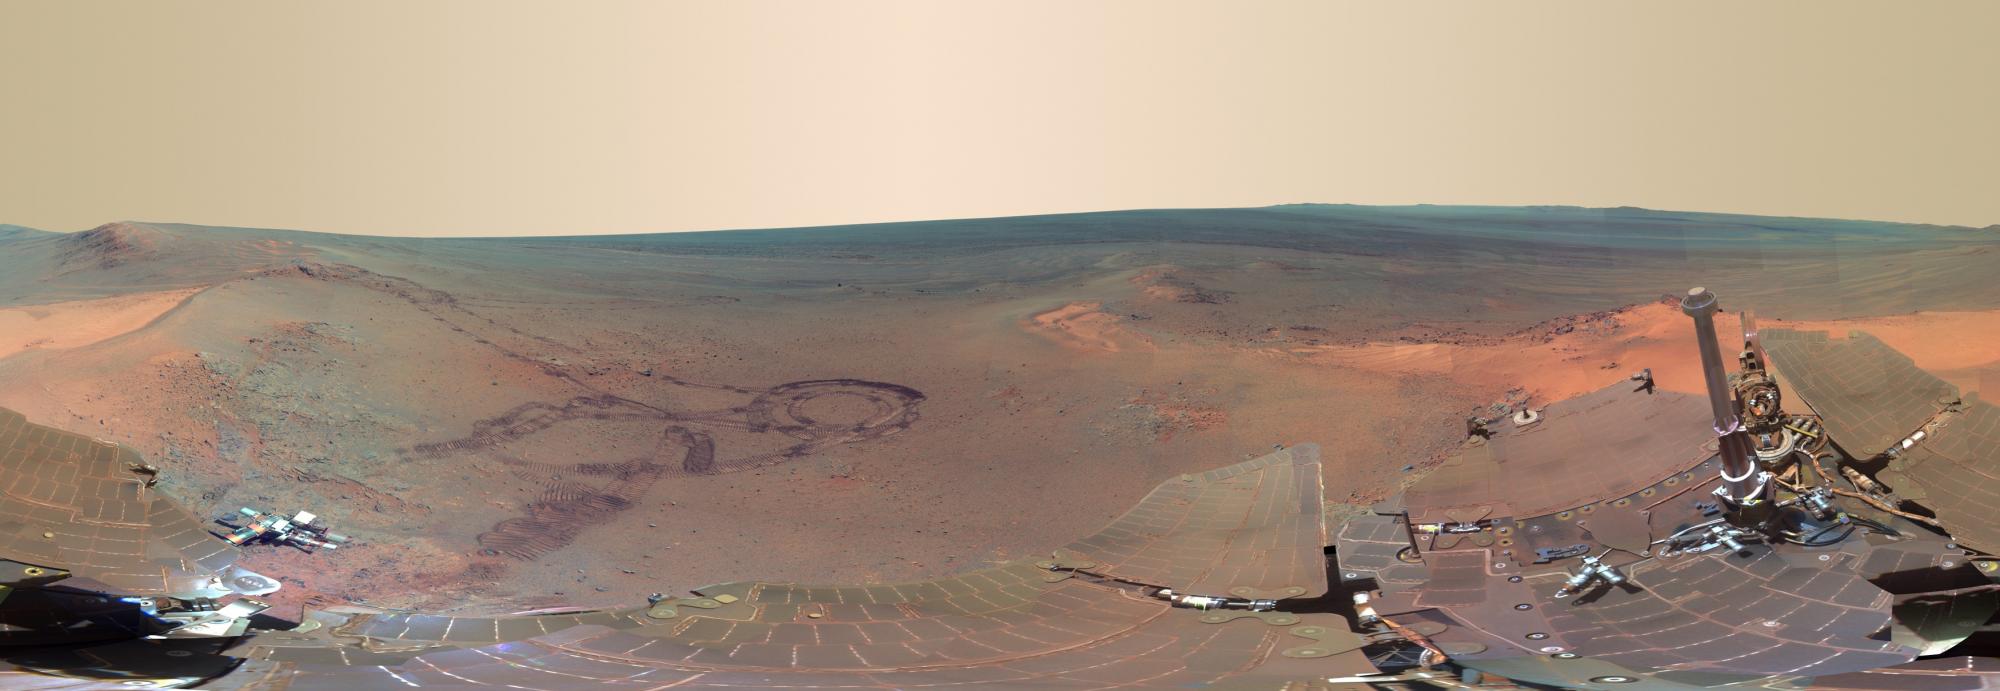 NASA公布火星地表高清广角图 拍摄过程历时4个月